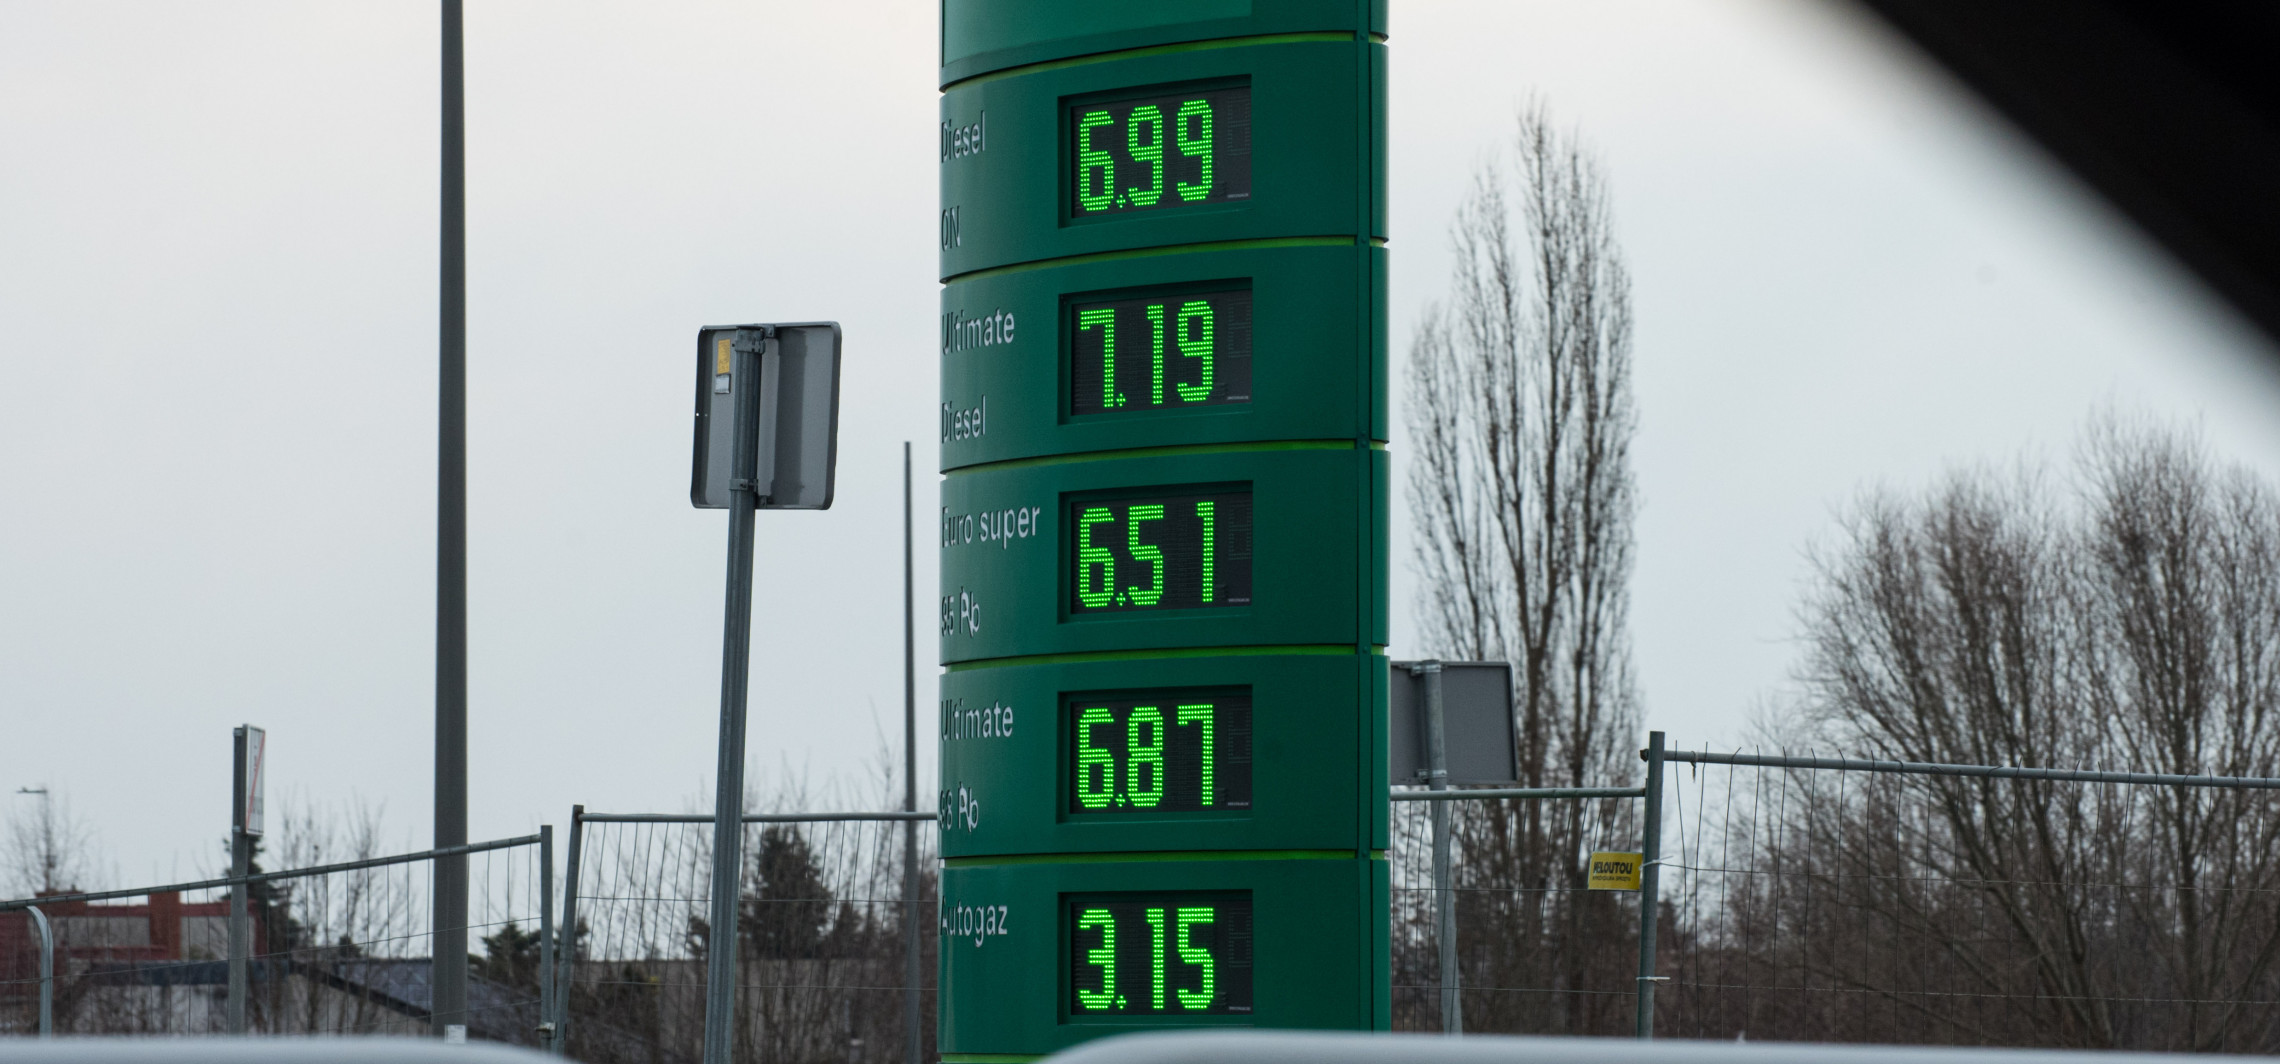 Inowrocław - Ceny paliw szaleją. Mamy już "7" z przodu